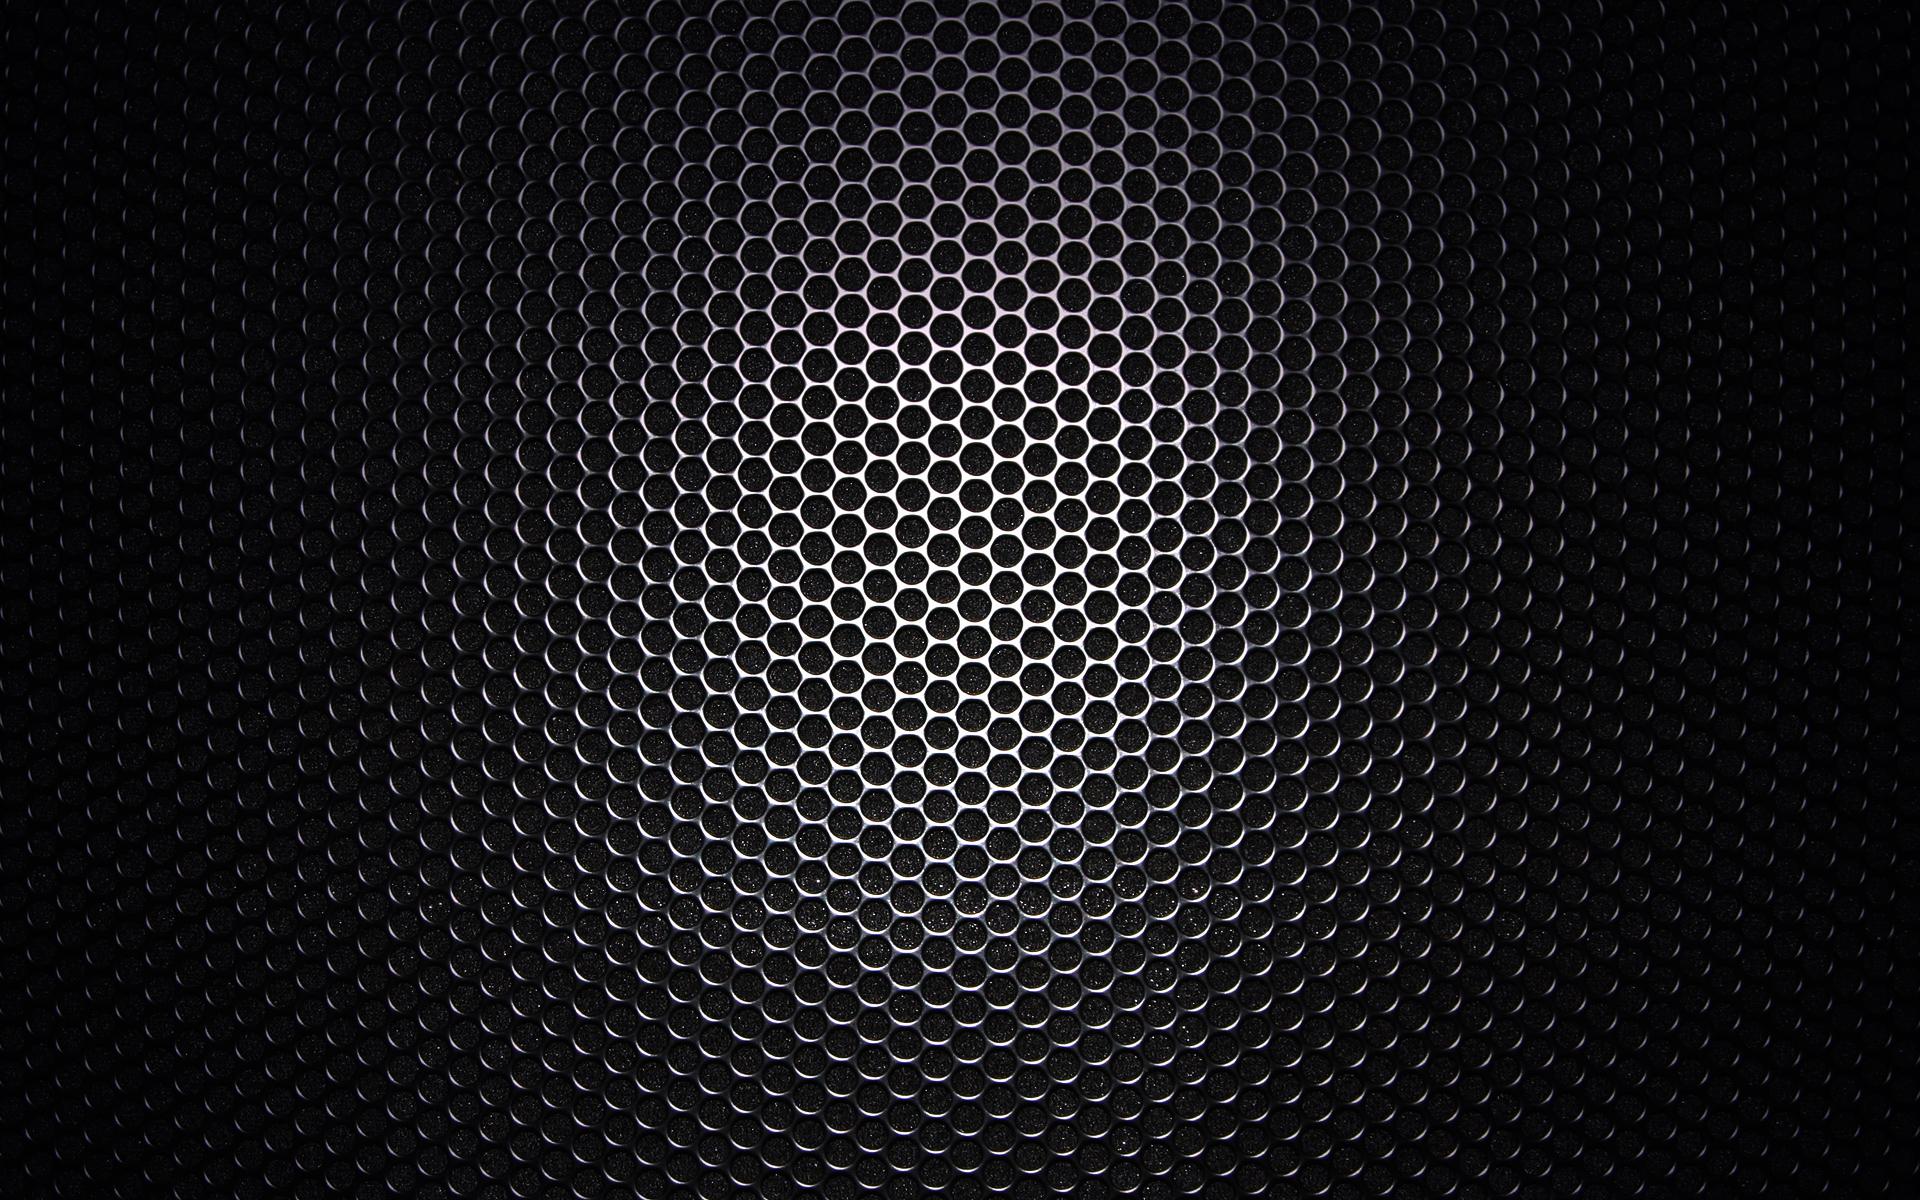 Senses Speaker powerpoint background